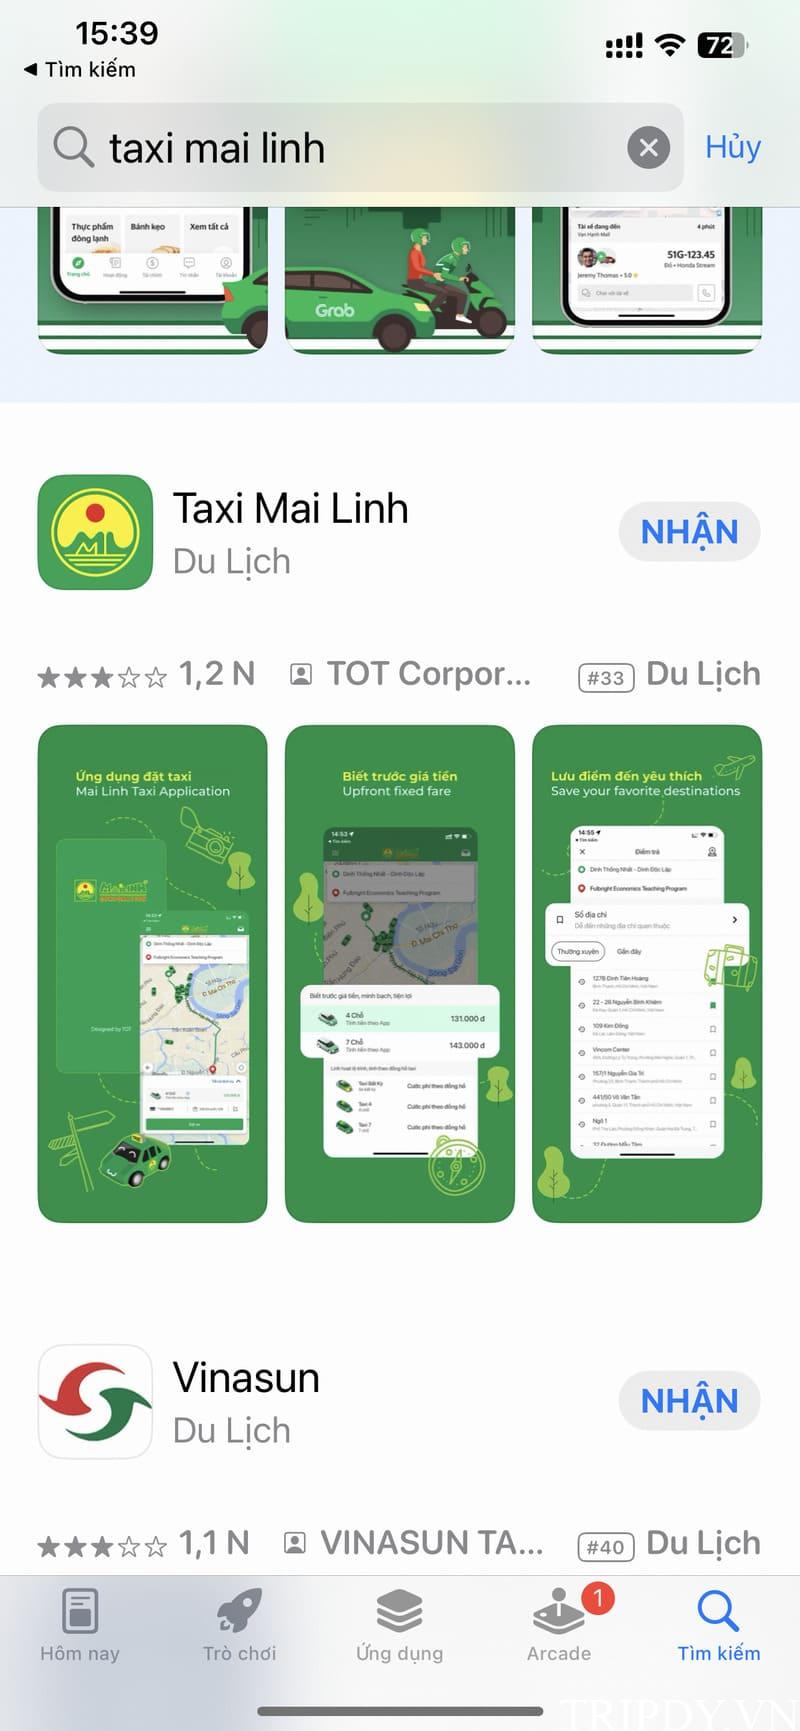 Taxi Mai Linh Tân An: Số điện thoại tổng đài, giá cước km